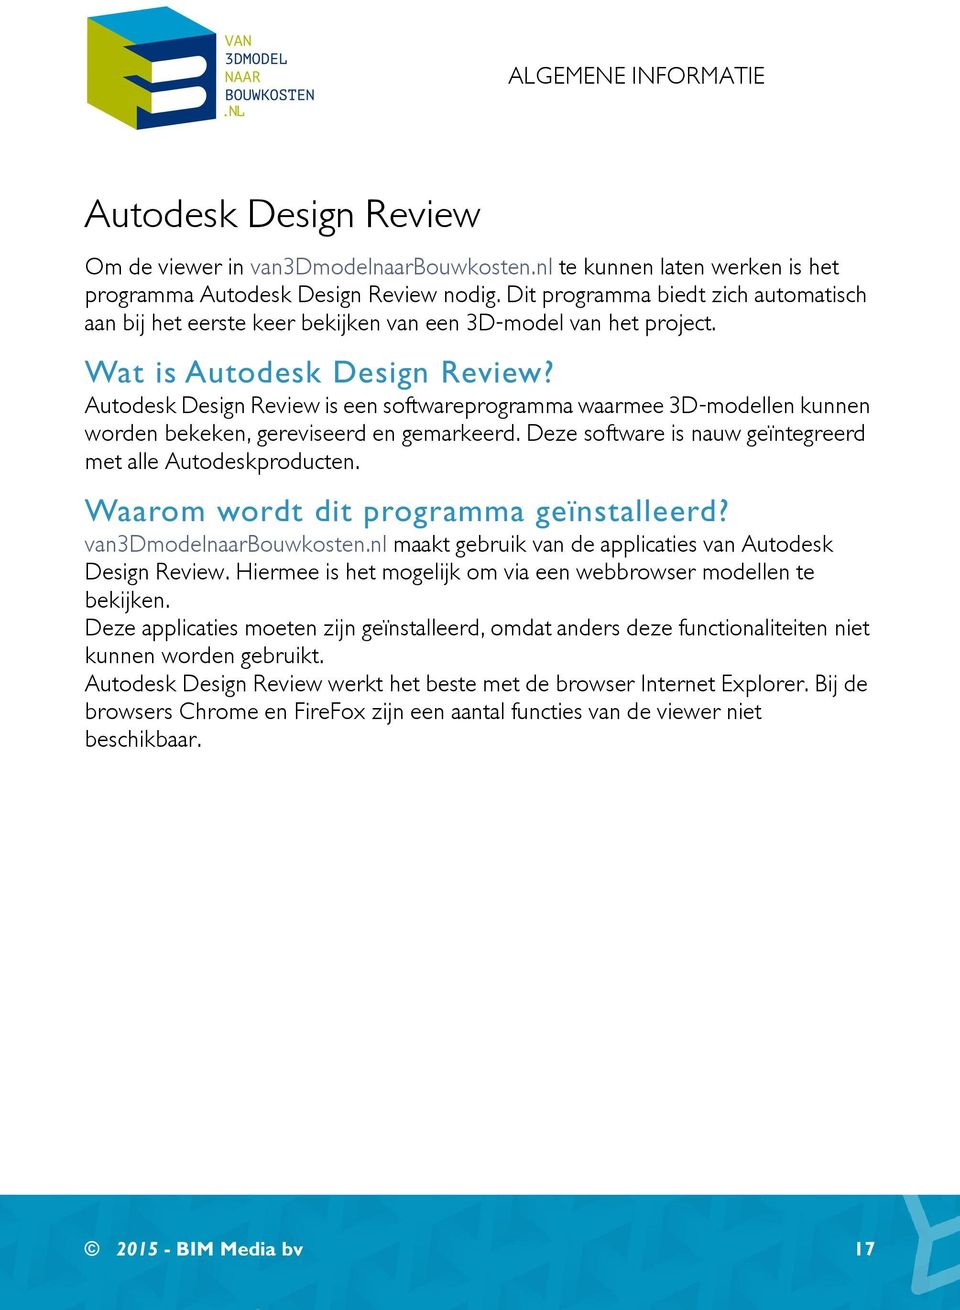 Autodesk Design Review is een softwareprogramma waarmee 3D-modellen kunnen worden bekeken, gereviseerd en gemarkeerd. Deze software is nauw geïntegreerd met alle Autodeskproducten.